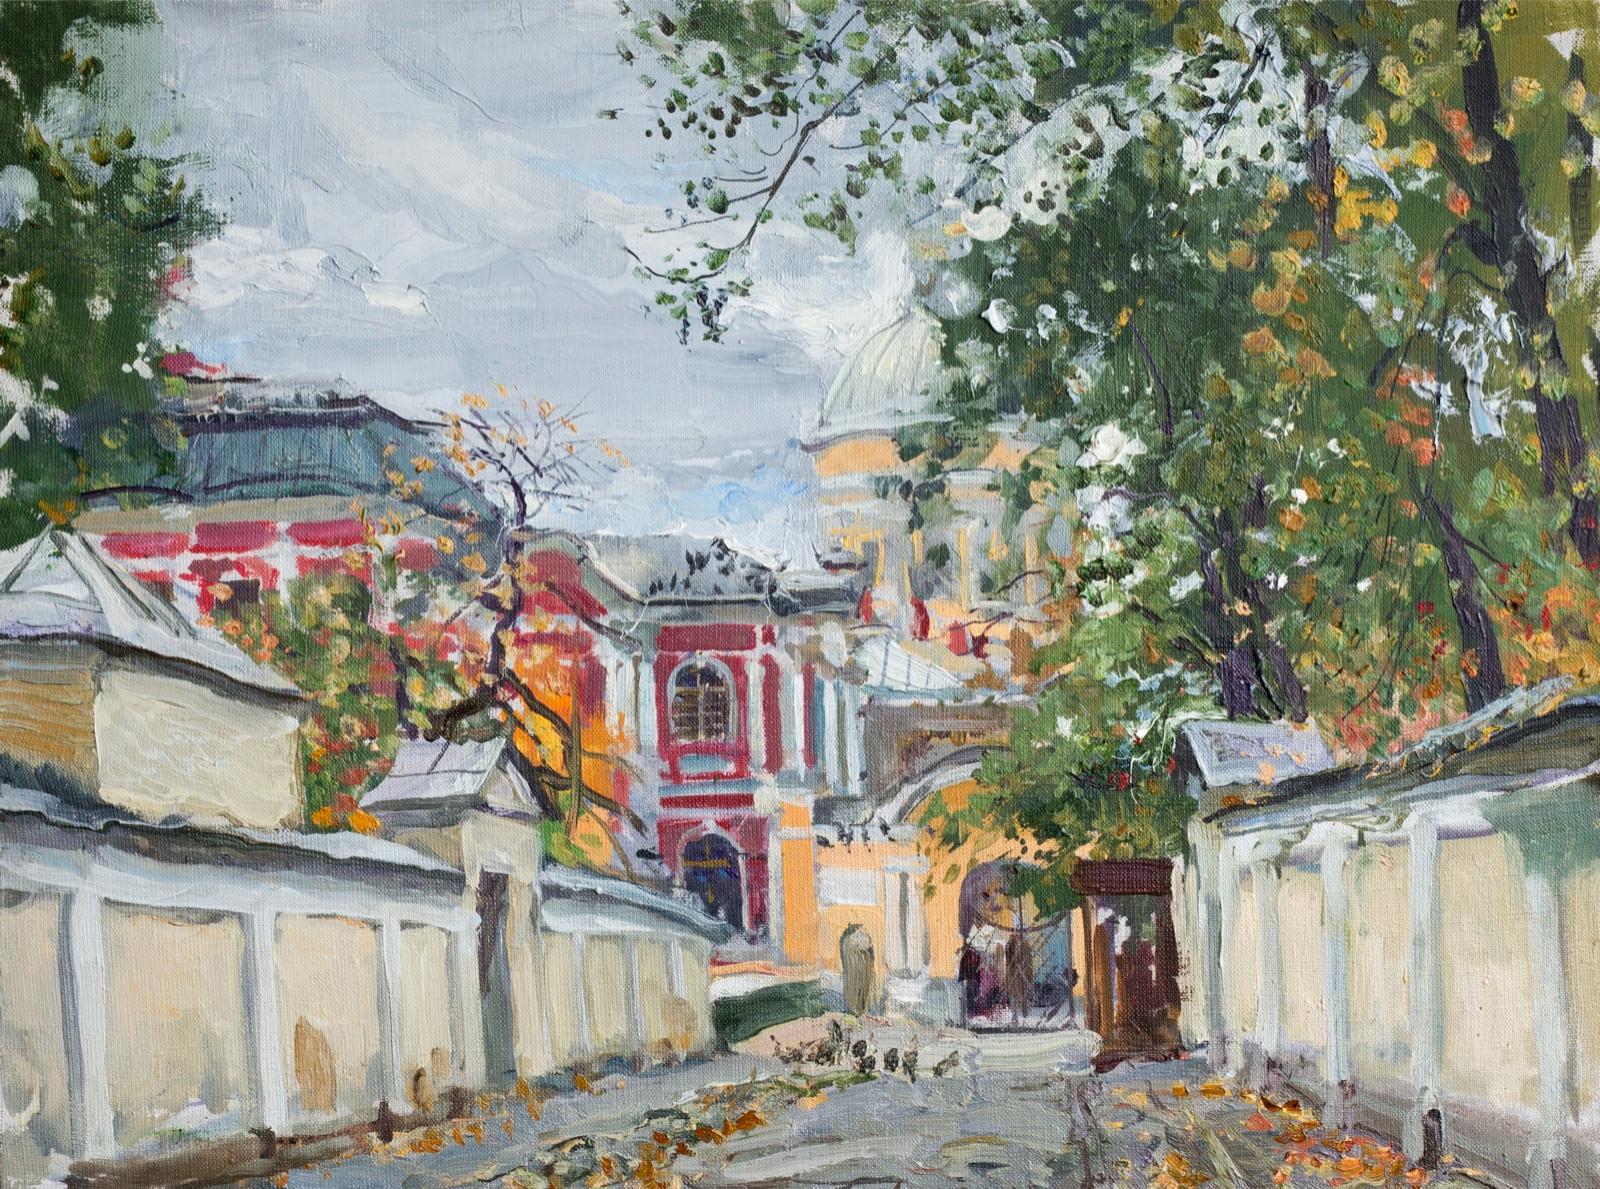 Александро-Невский монастырь. Original modern art painting